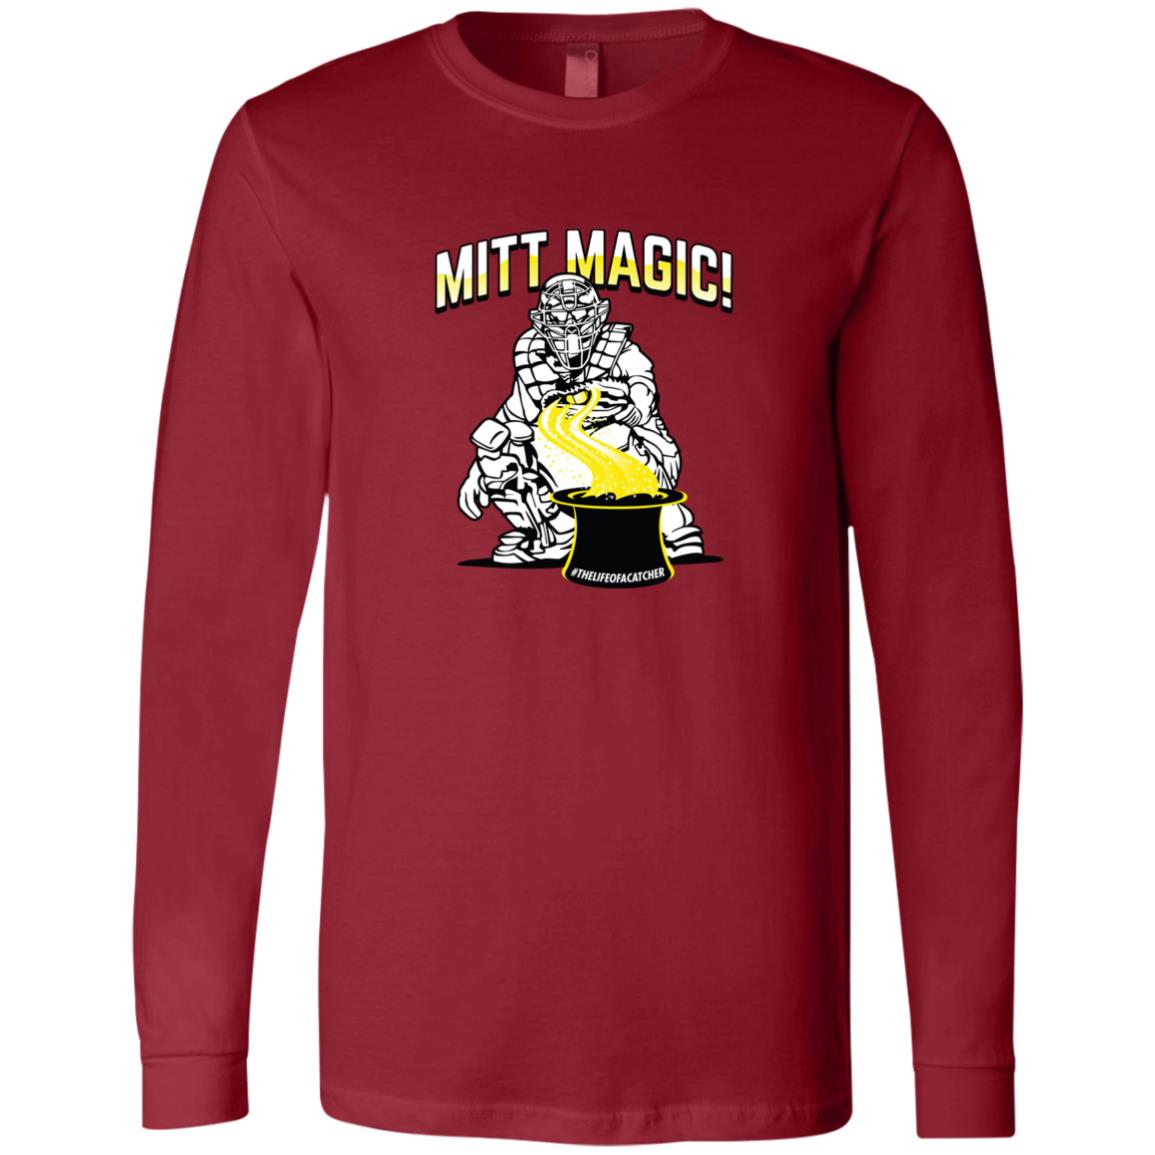 The Catching Guy Mitt Magic Men's Jersey Tee red